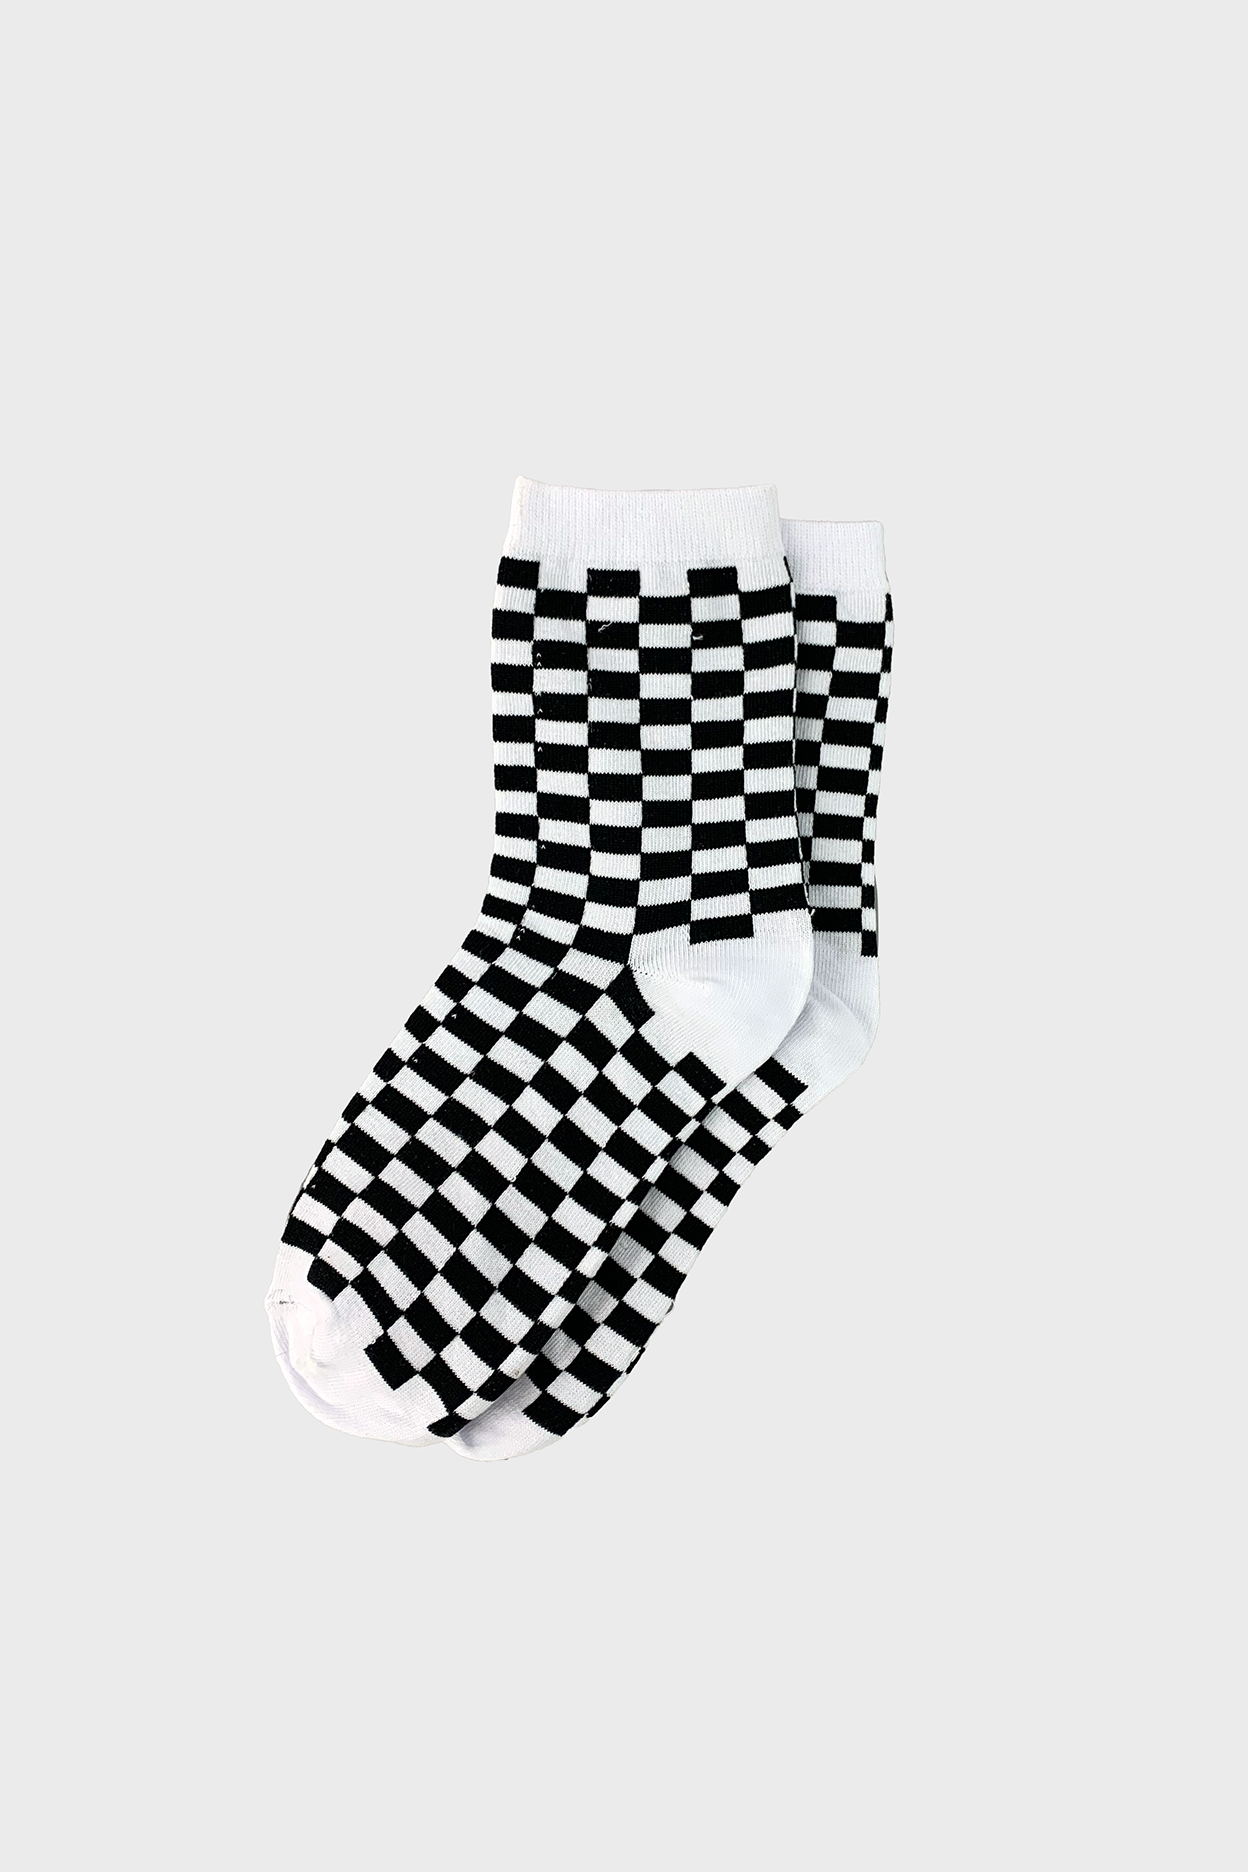 Speedy Racer Socks